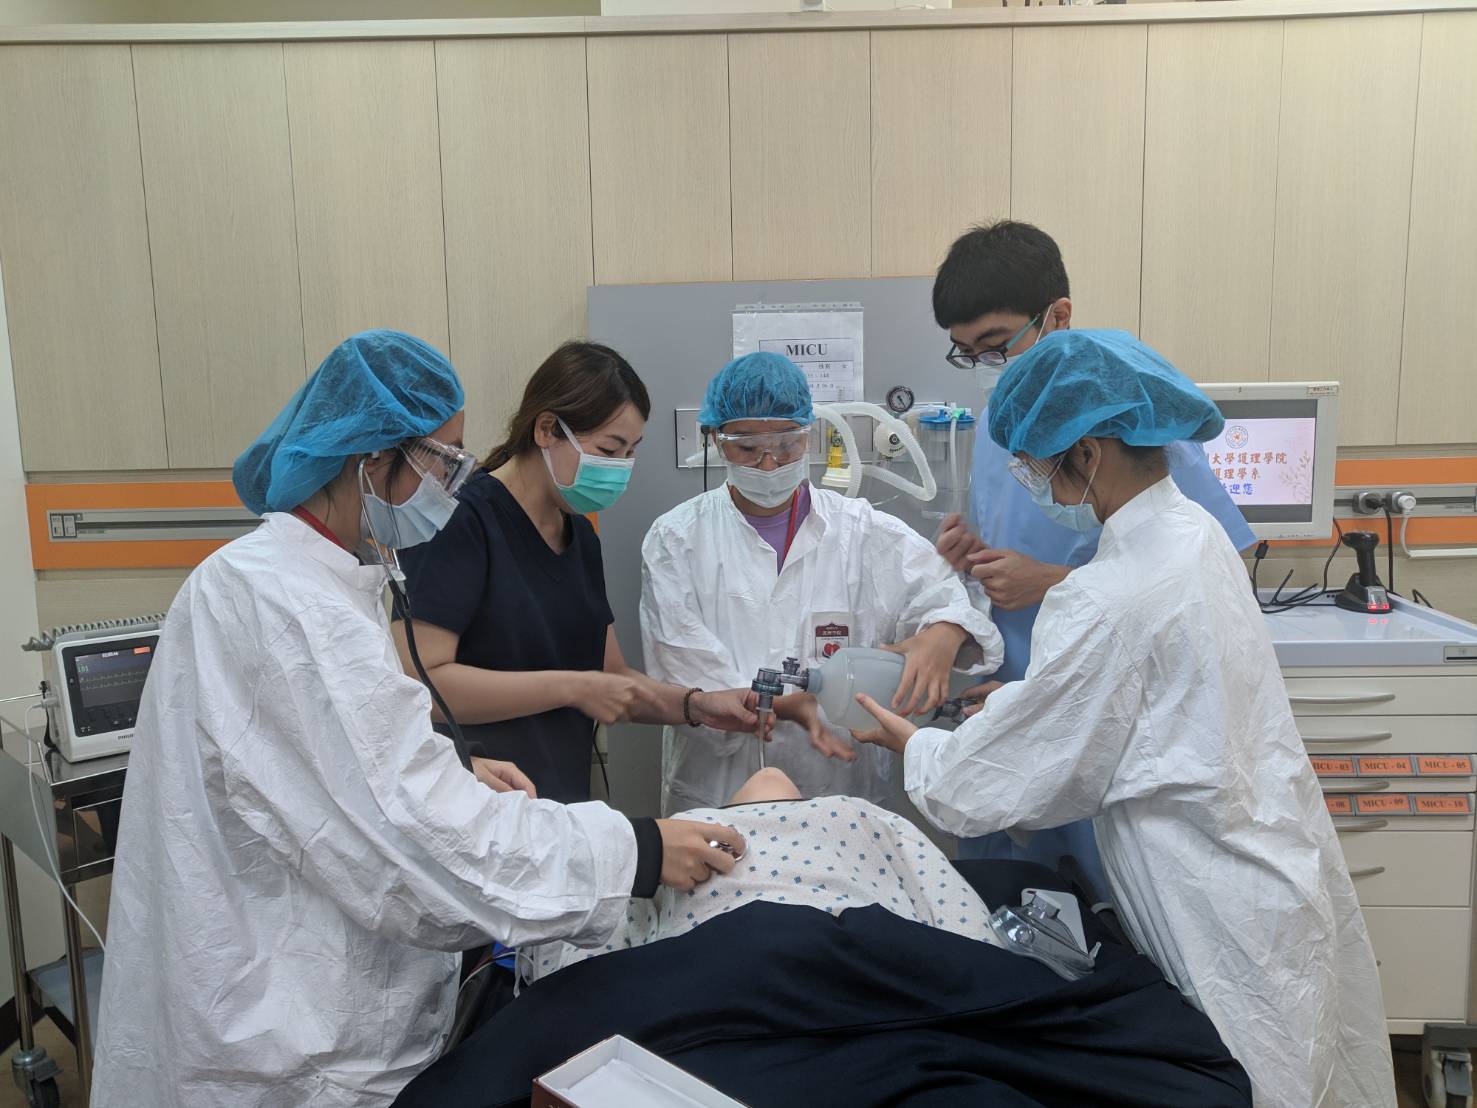 亞大護理學系彭逸稘老師(左二)指導學員體驗高擬真智慧病人插管。